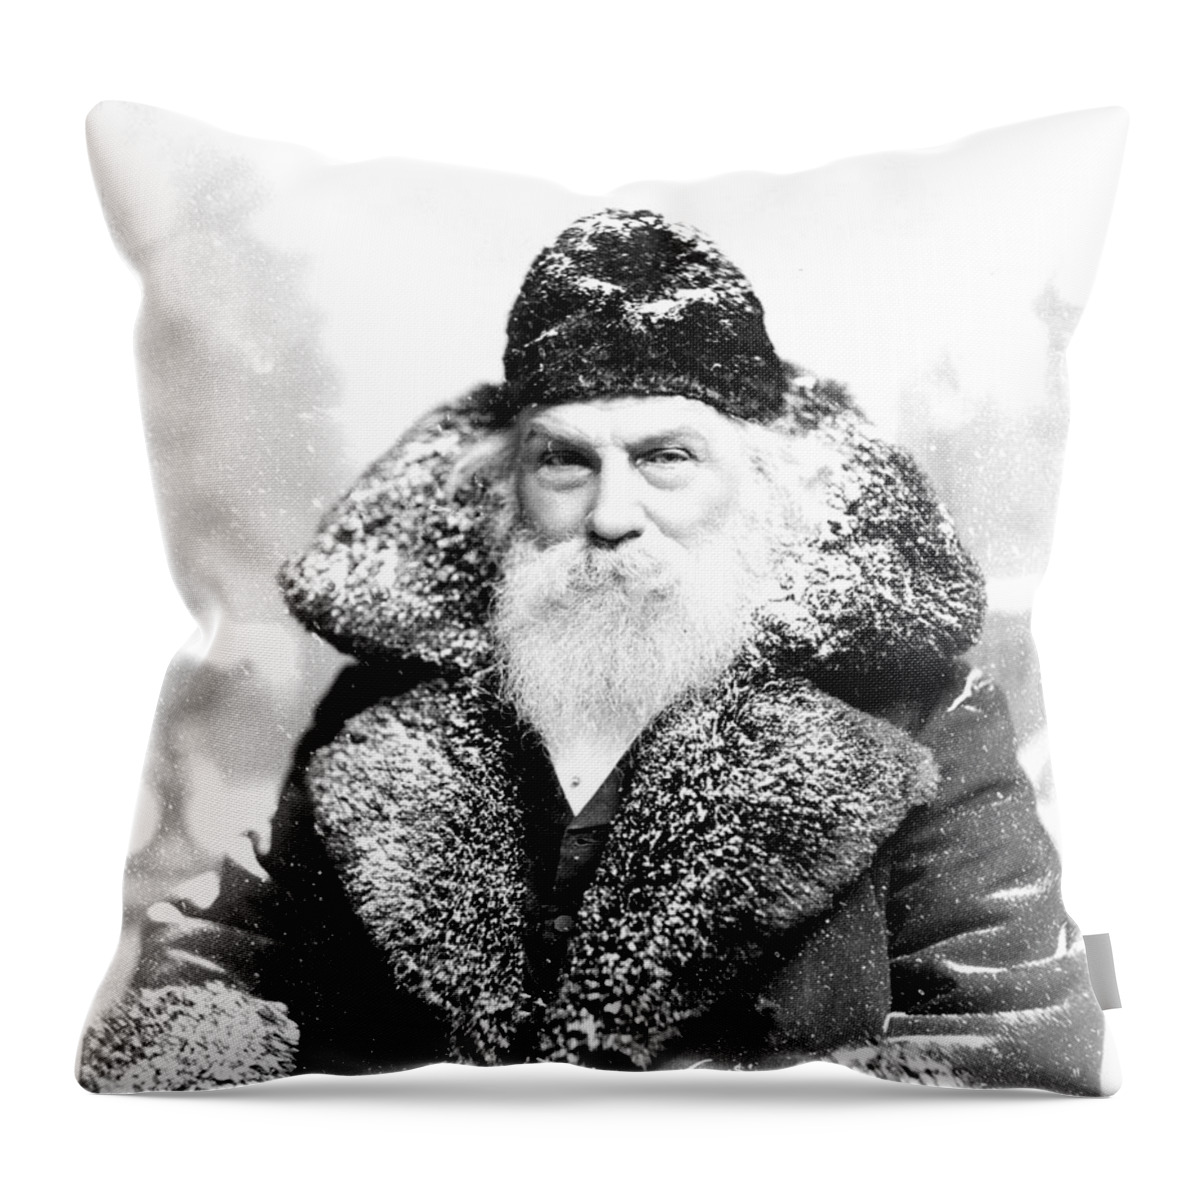 Santa Claus Throw Pillow featuring the digital art Santa Claus by David Bridburg